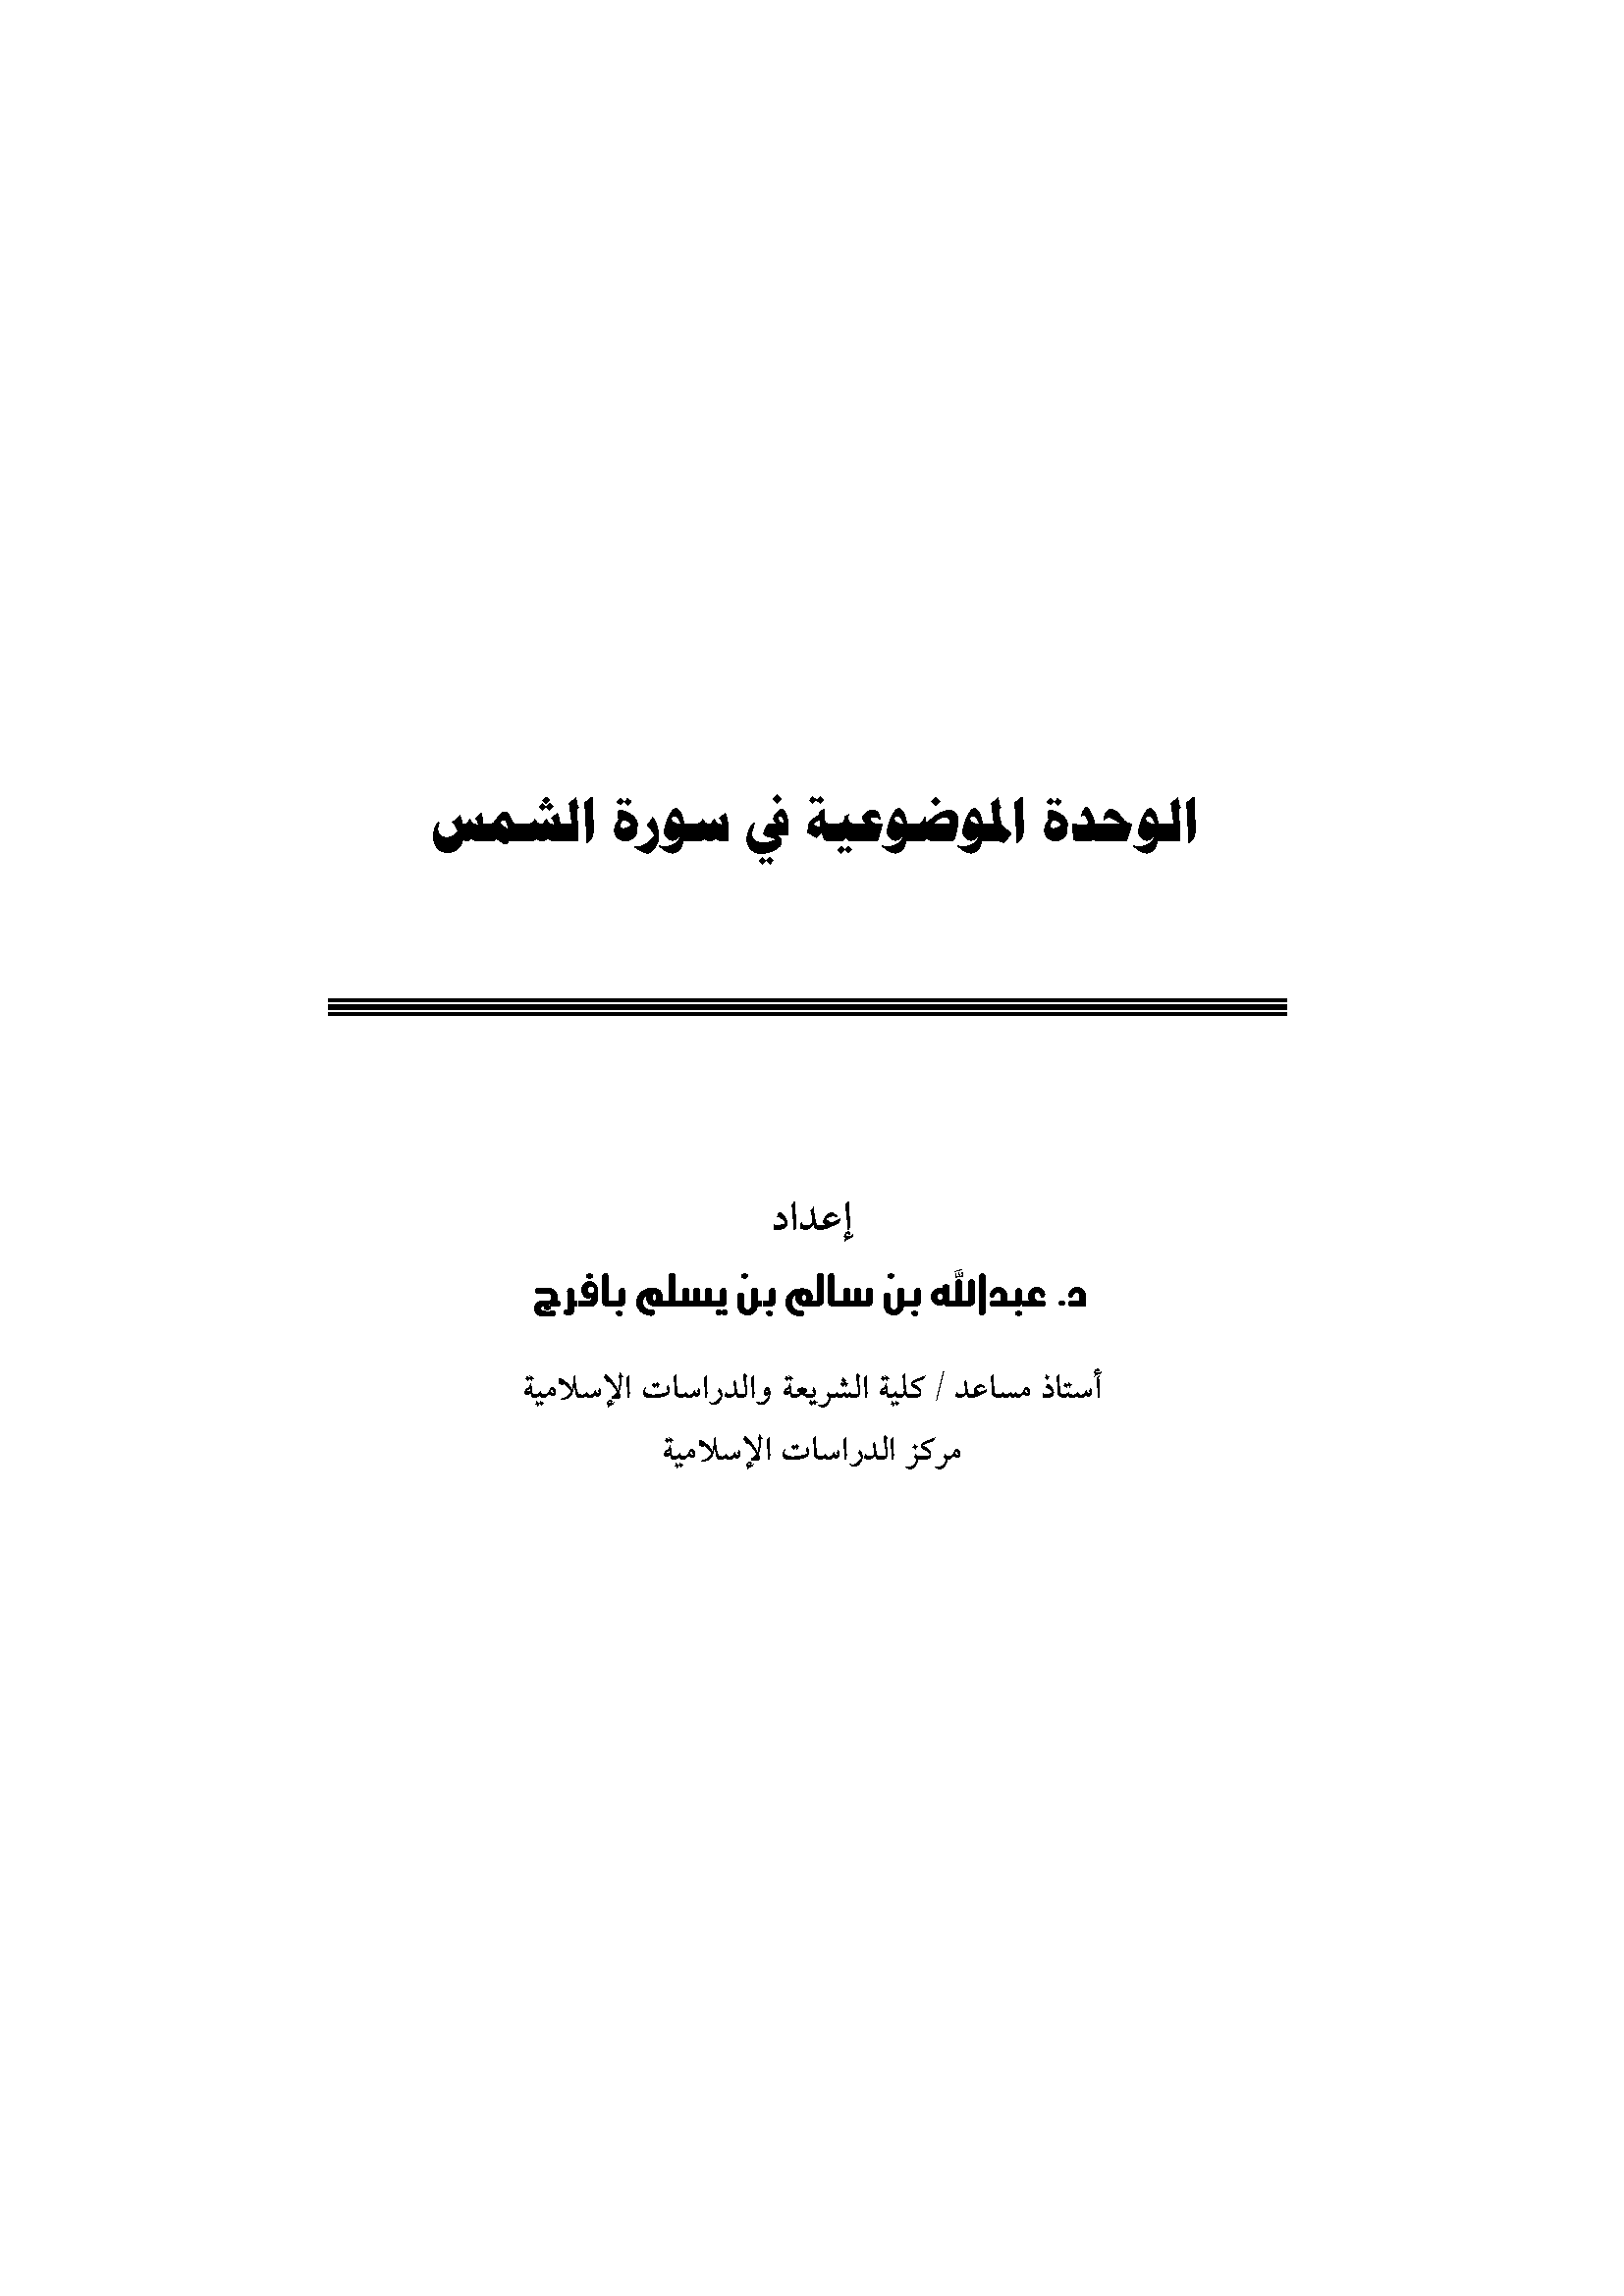 تحميل كتاب الوحدة الموضوعية في سورة الشمس للمؤلف: الدكتور عبد الله بن سالم بن يسلم بافرج